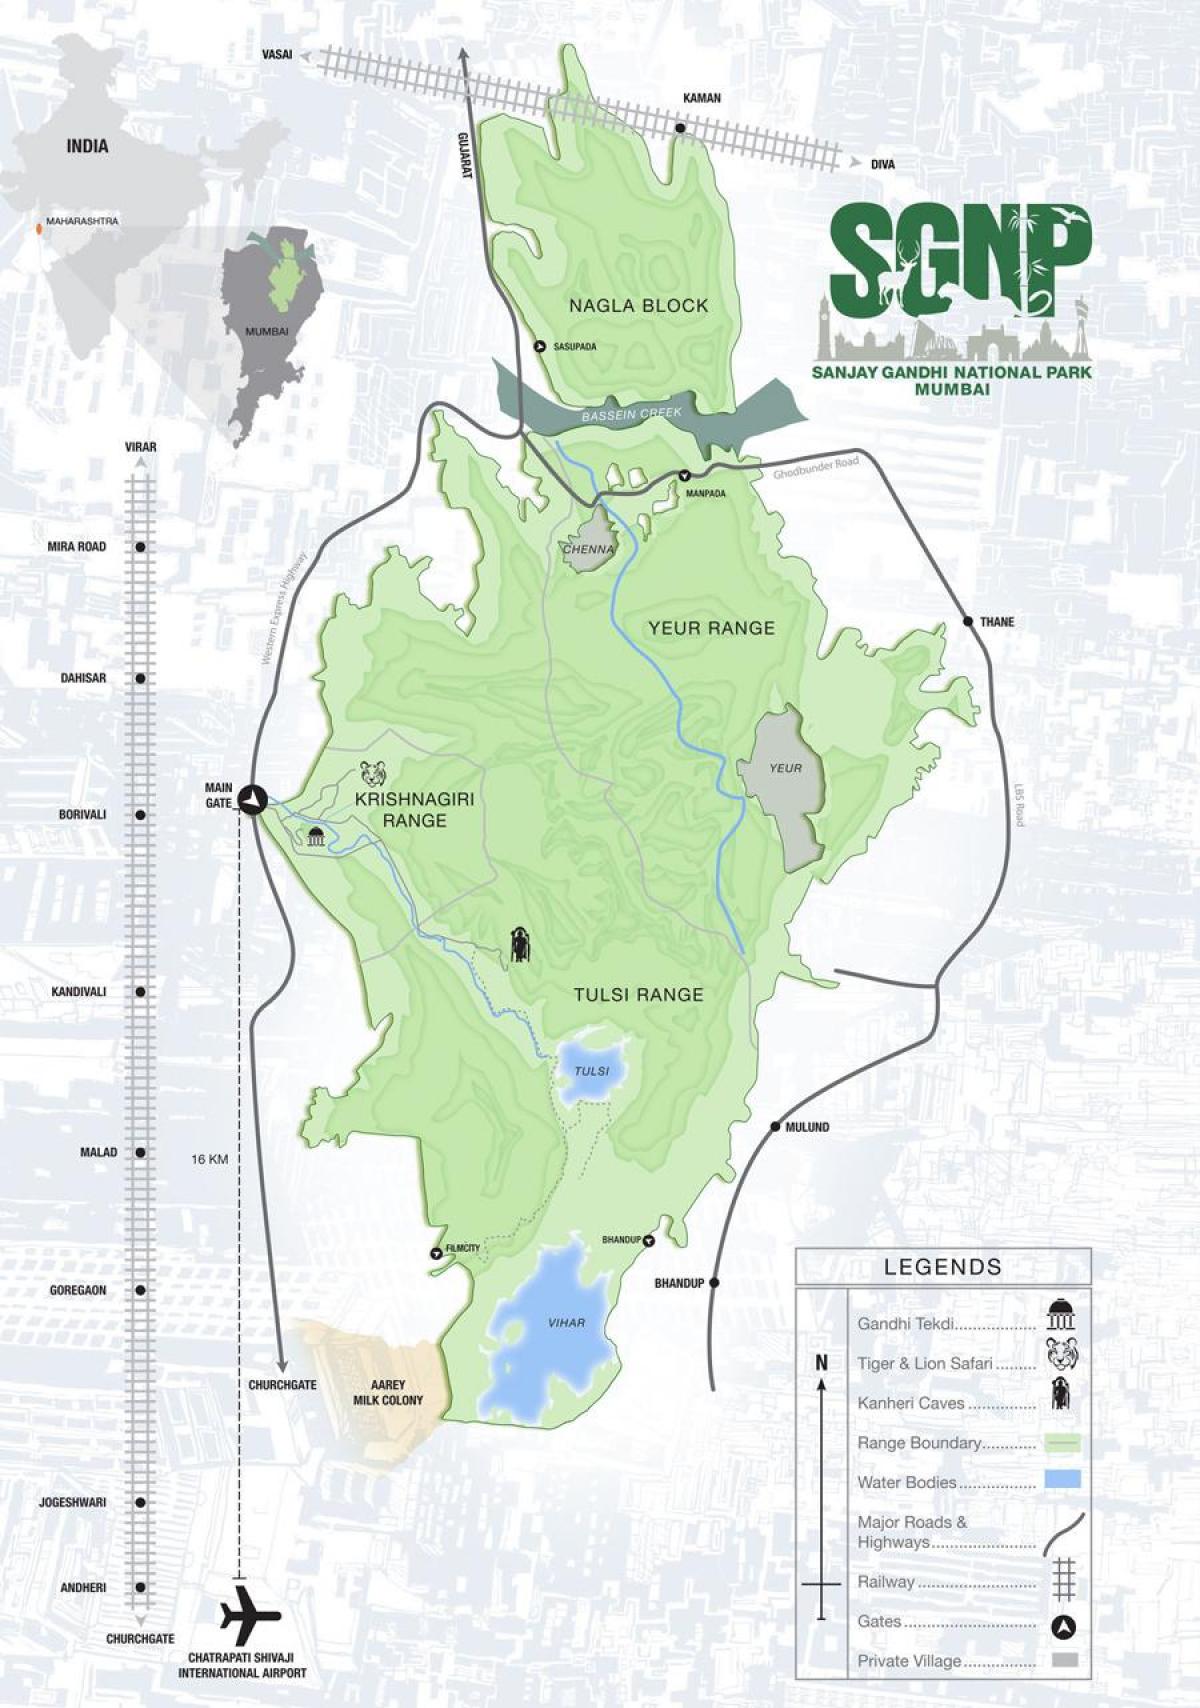 zemljevid sanjay gandhi nacionalni park